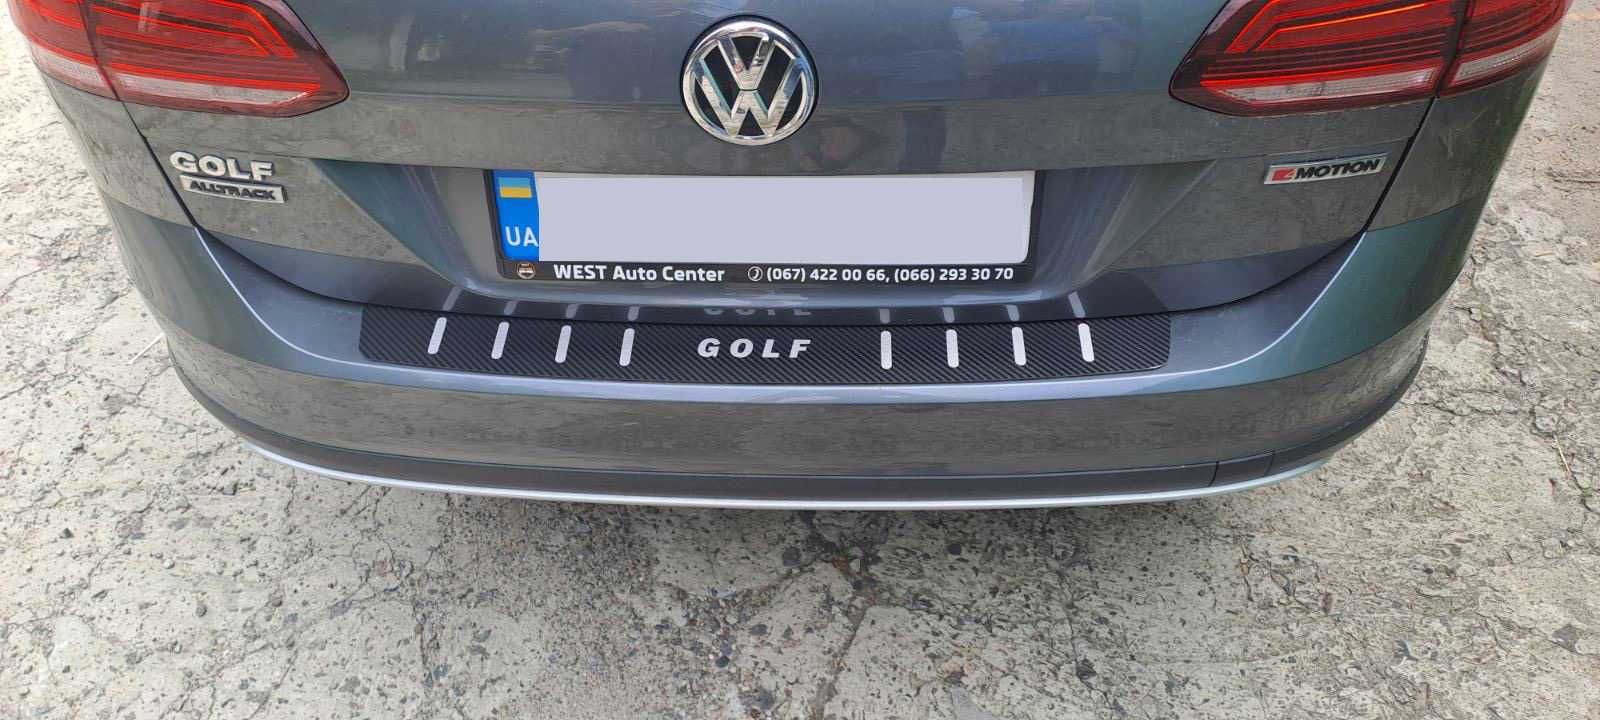 Накладка на бампер VW Golf 7 Combi Универсал Нержавейка в карбоне